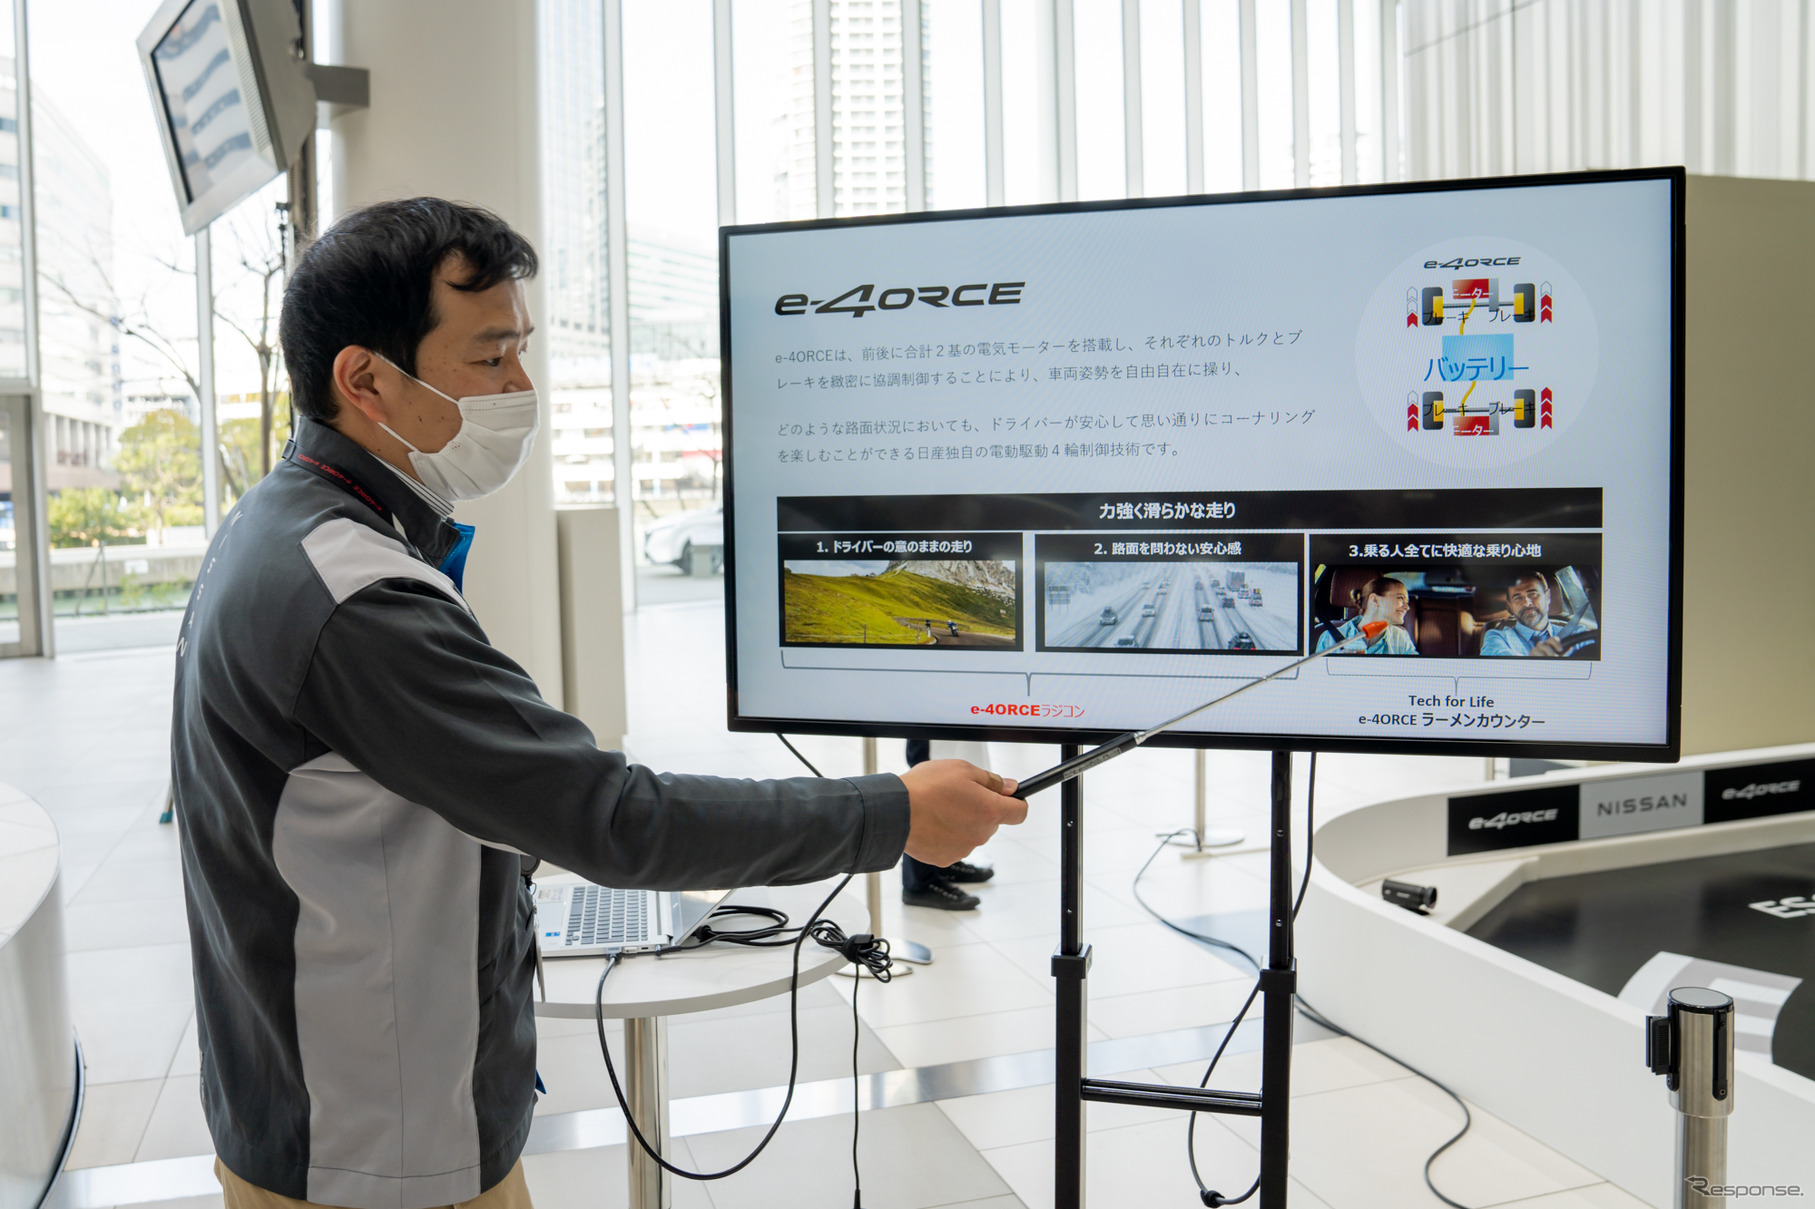 体験会は最初に、日産自動車株式会社企画・先行技術開発本部先行車両開発部の伊藤健介氏が、e-4ORCEについての説明と、ラジコンについての説明を行った。